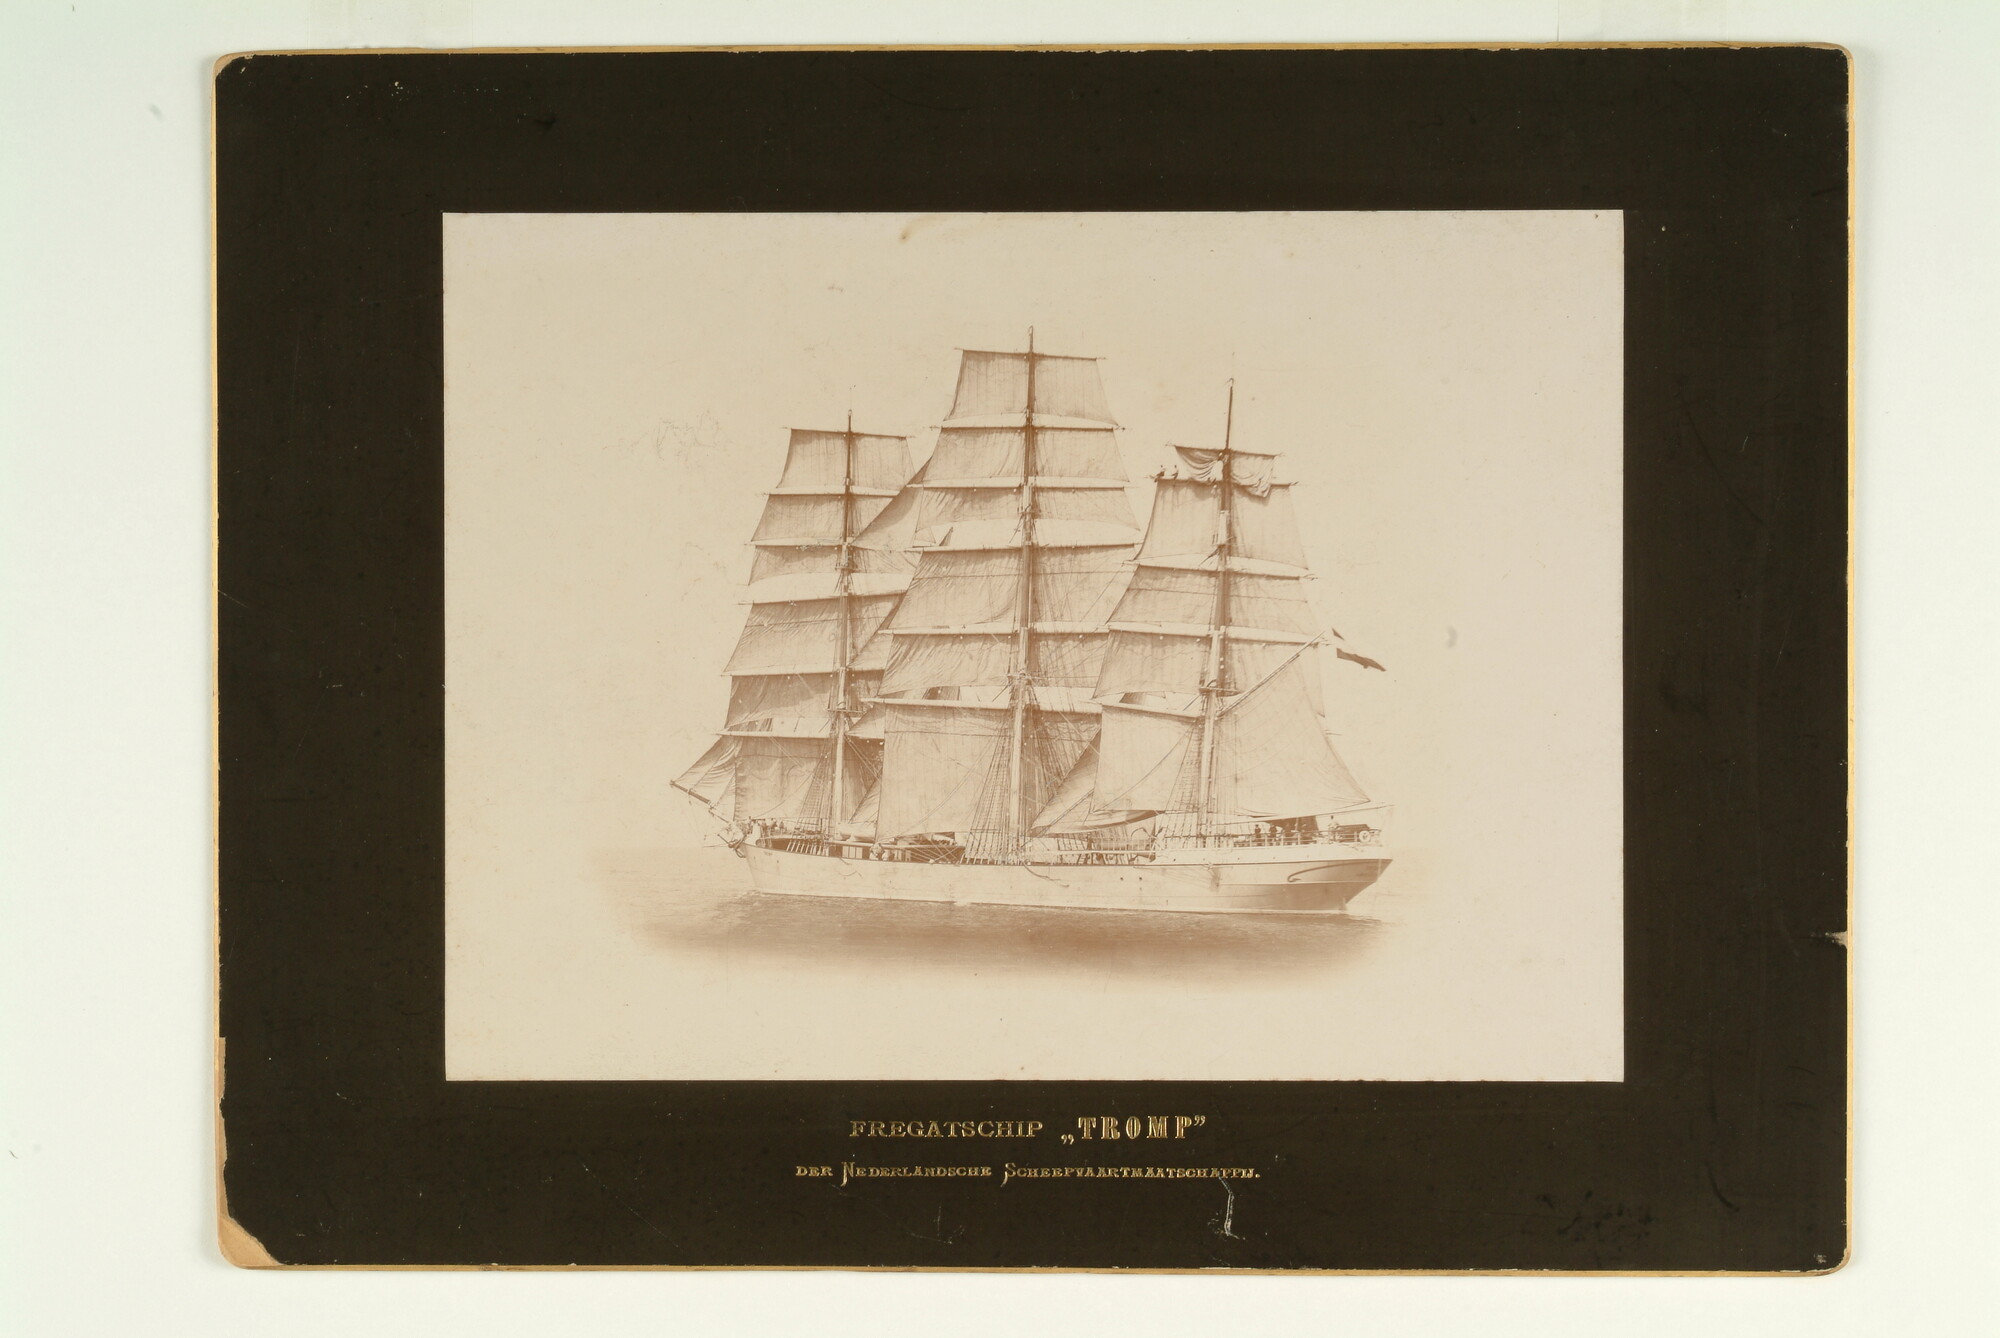 S.5591(28); Het fregatschip 'Tromp' van de Nederlandsche Scheepvaartmaatschappij, gebouwd in 1891 bij L. Smit & Zn; foto